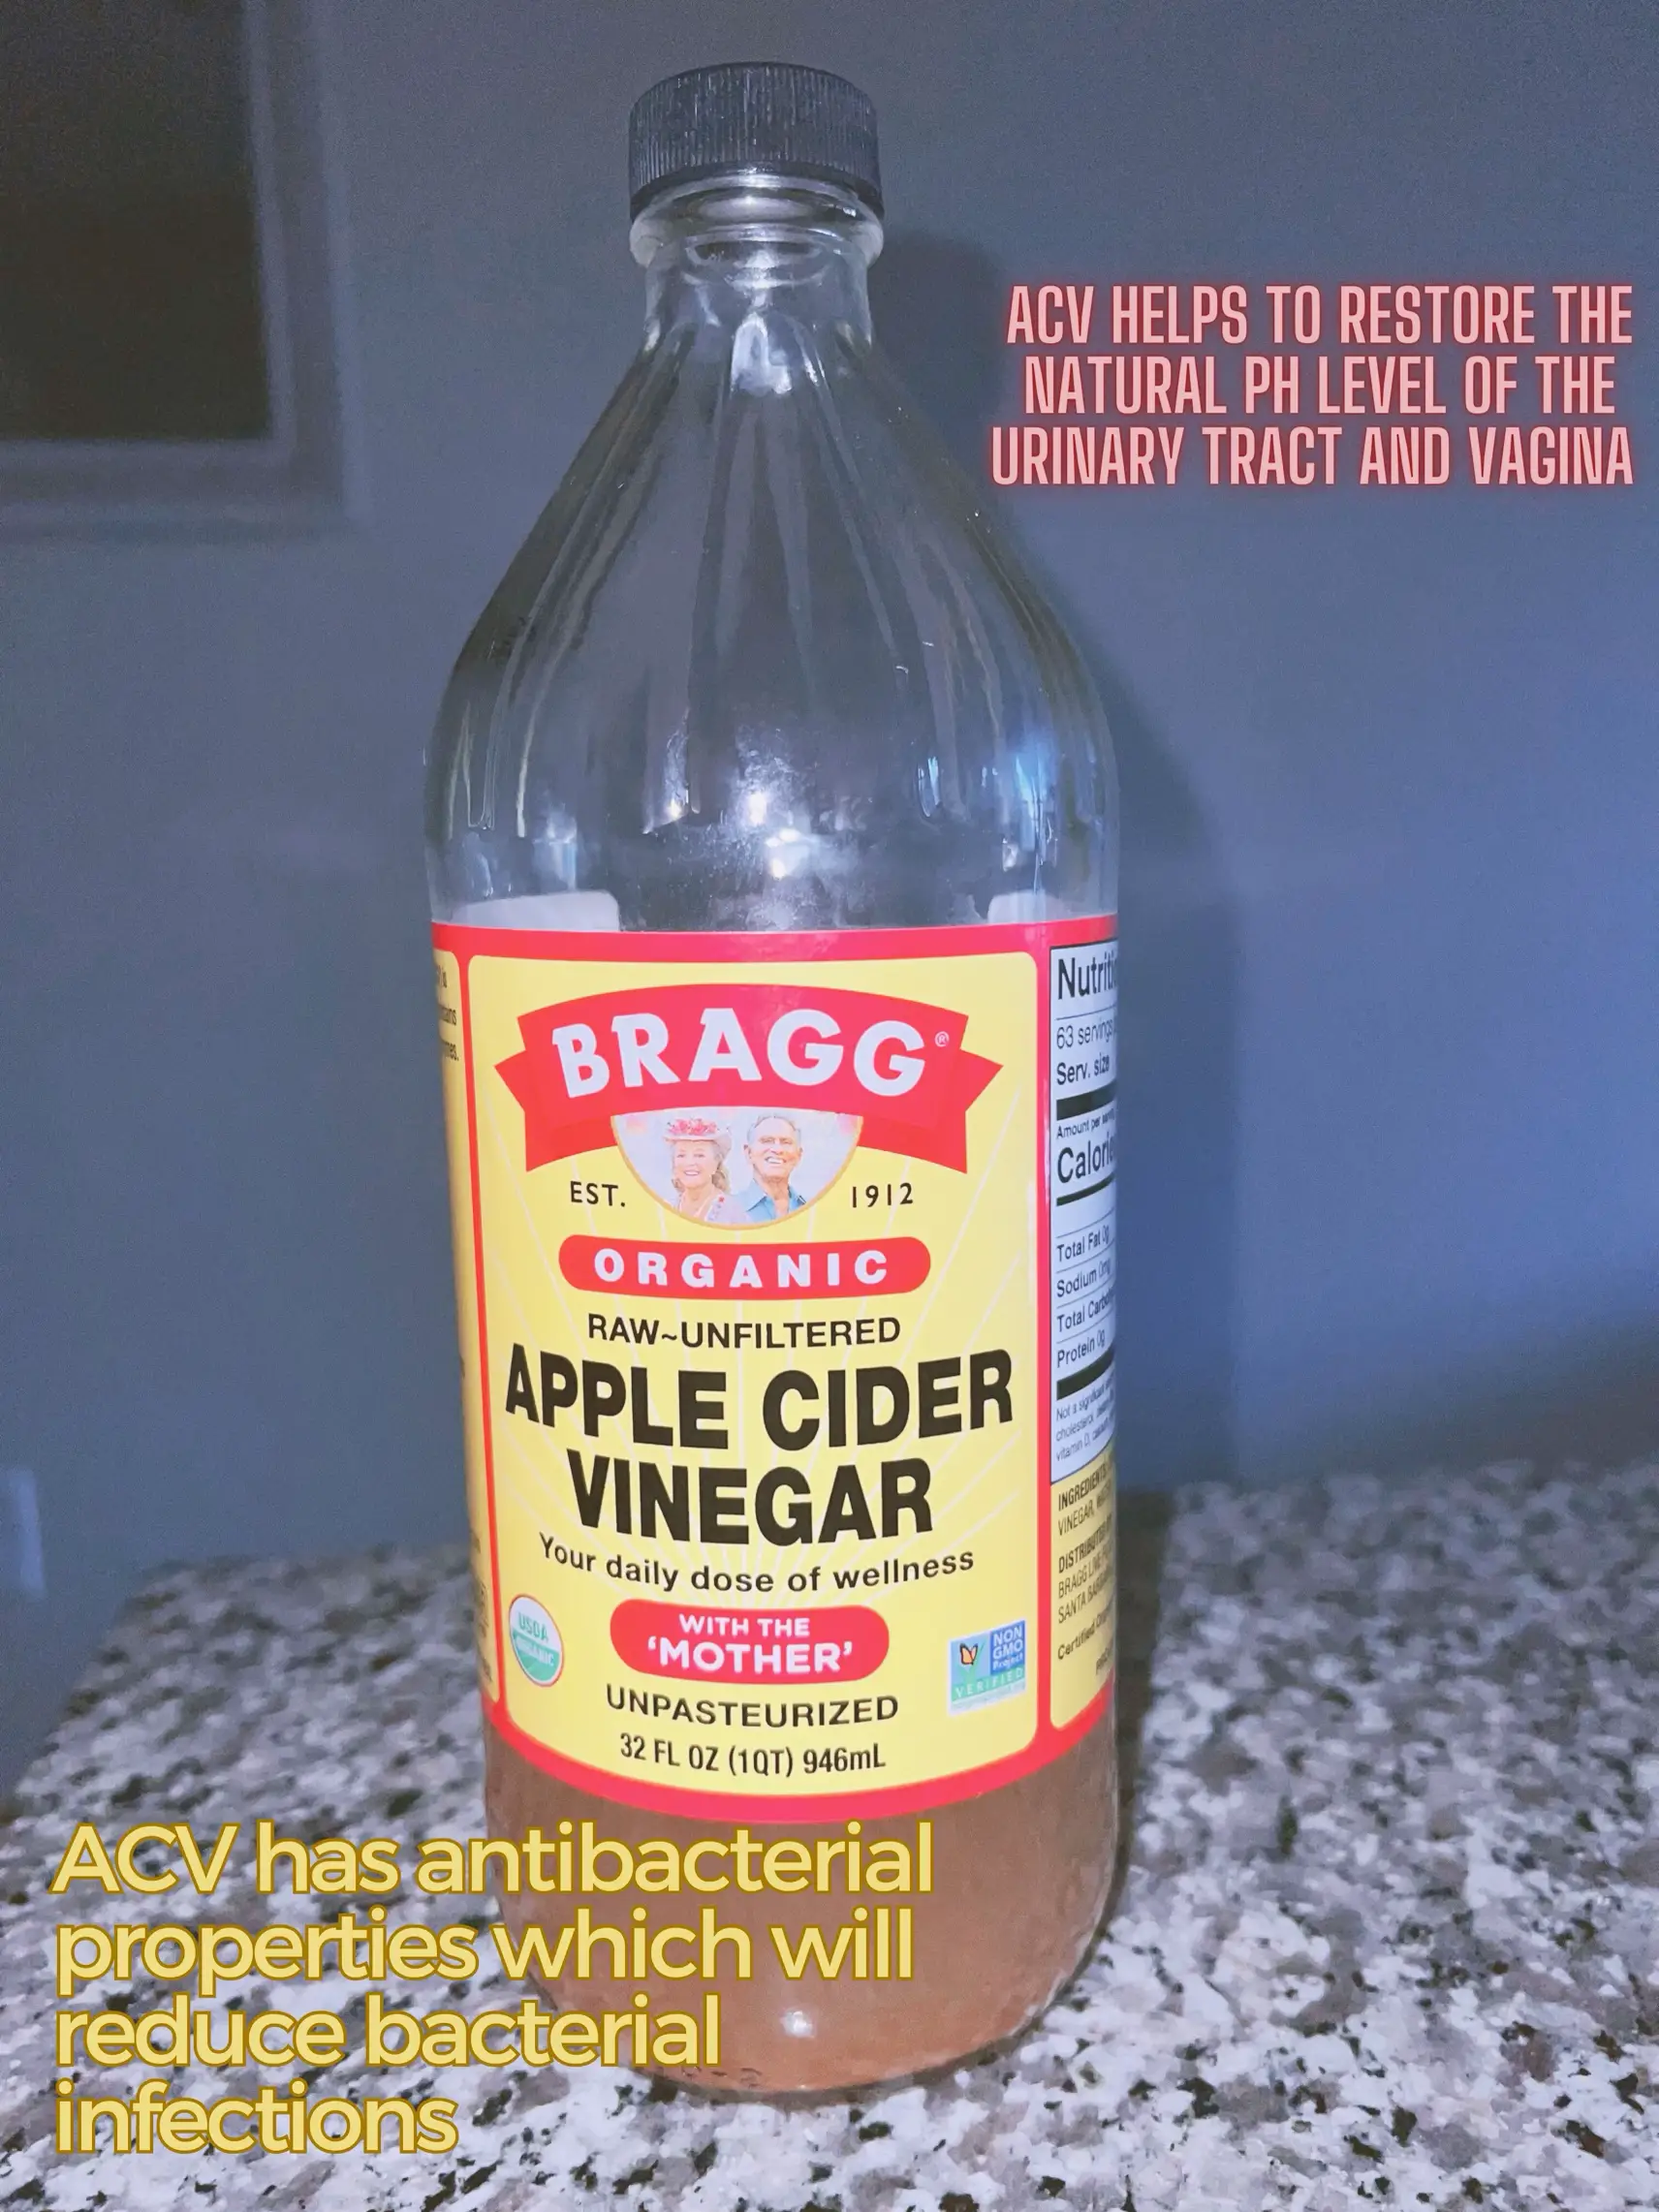 Apple Cider Vinegar for Women's Health